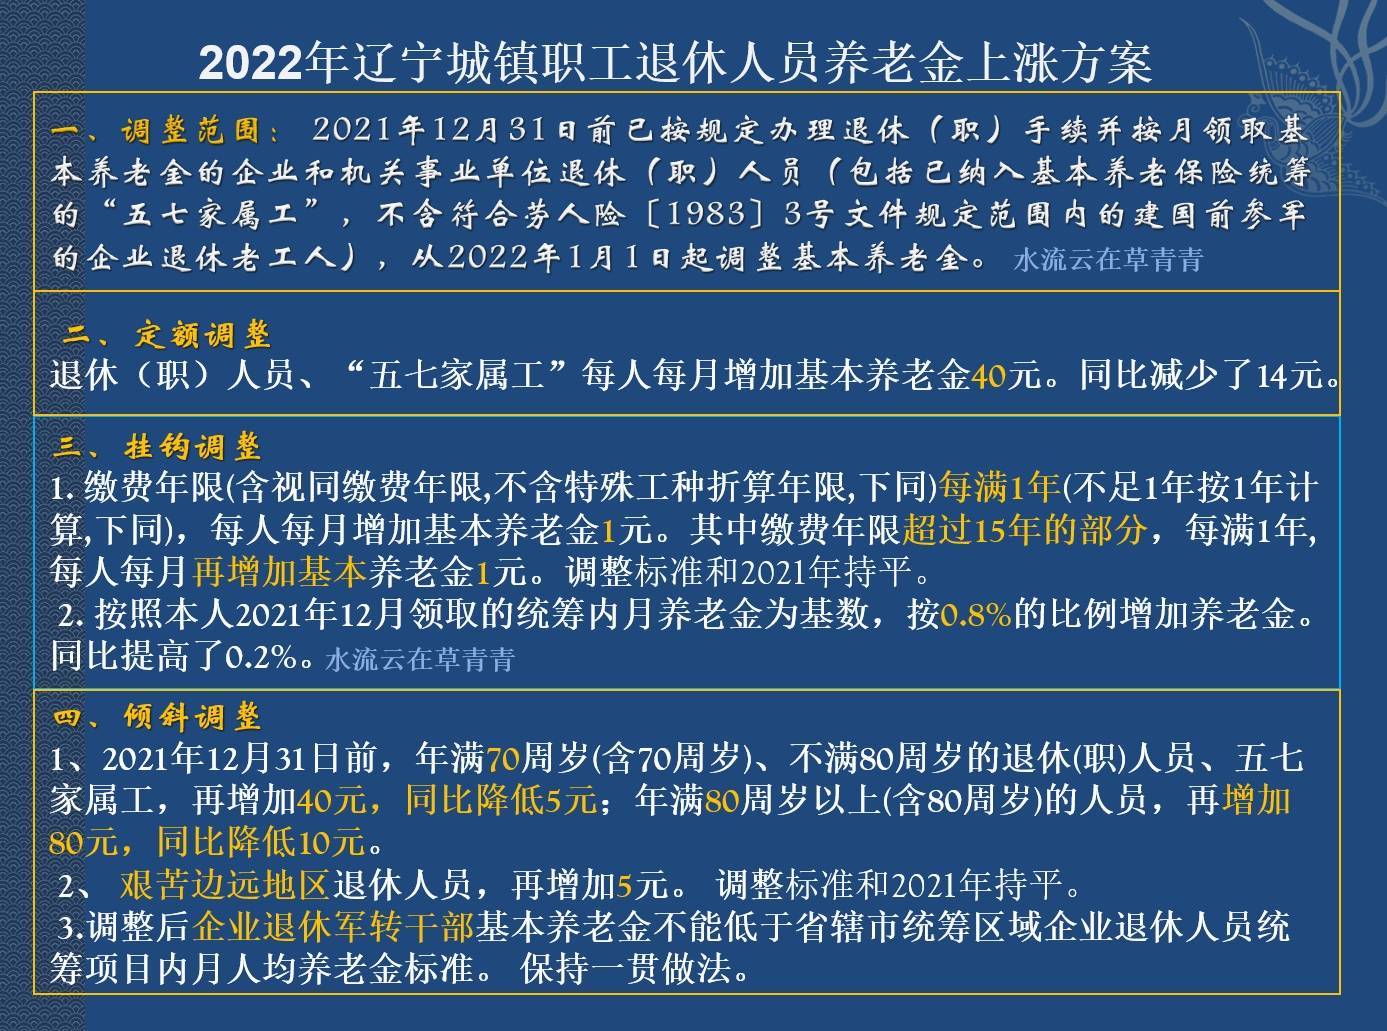 原创辽宁2022年养老金调整方案公布一增二降三持平三类人可多涨钱